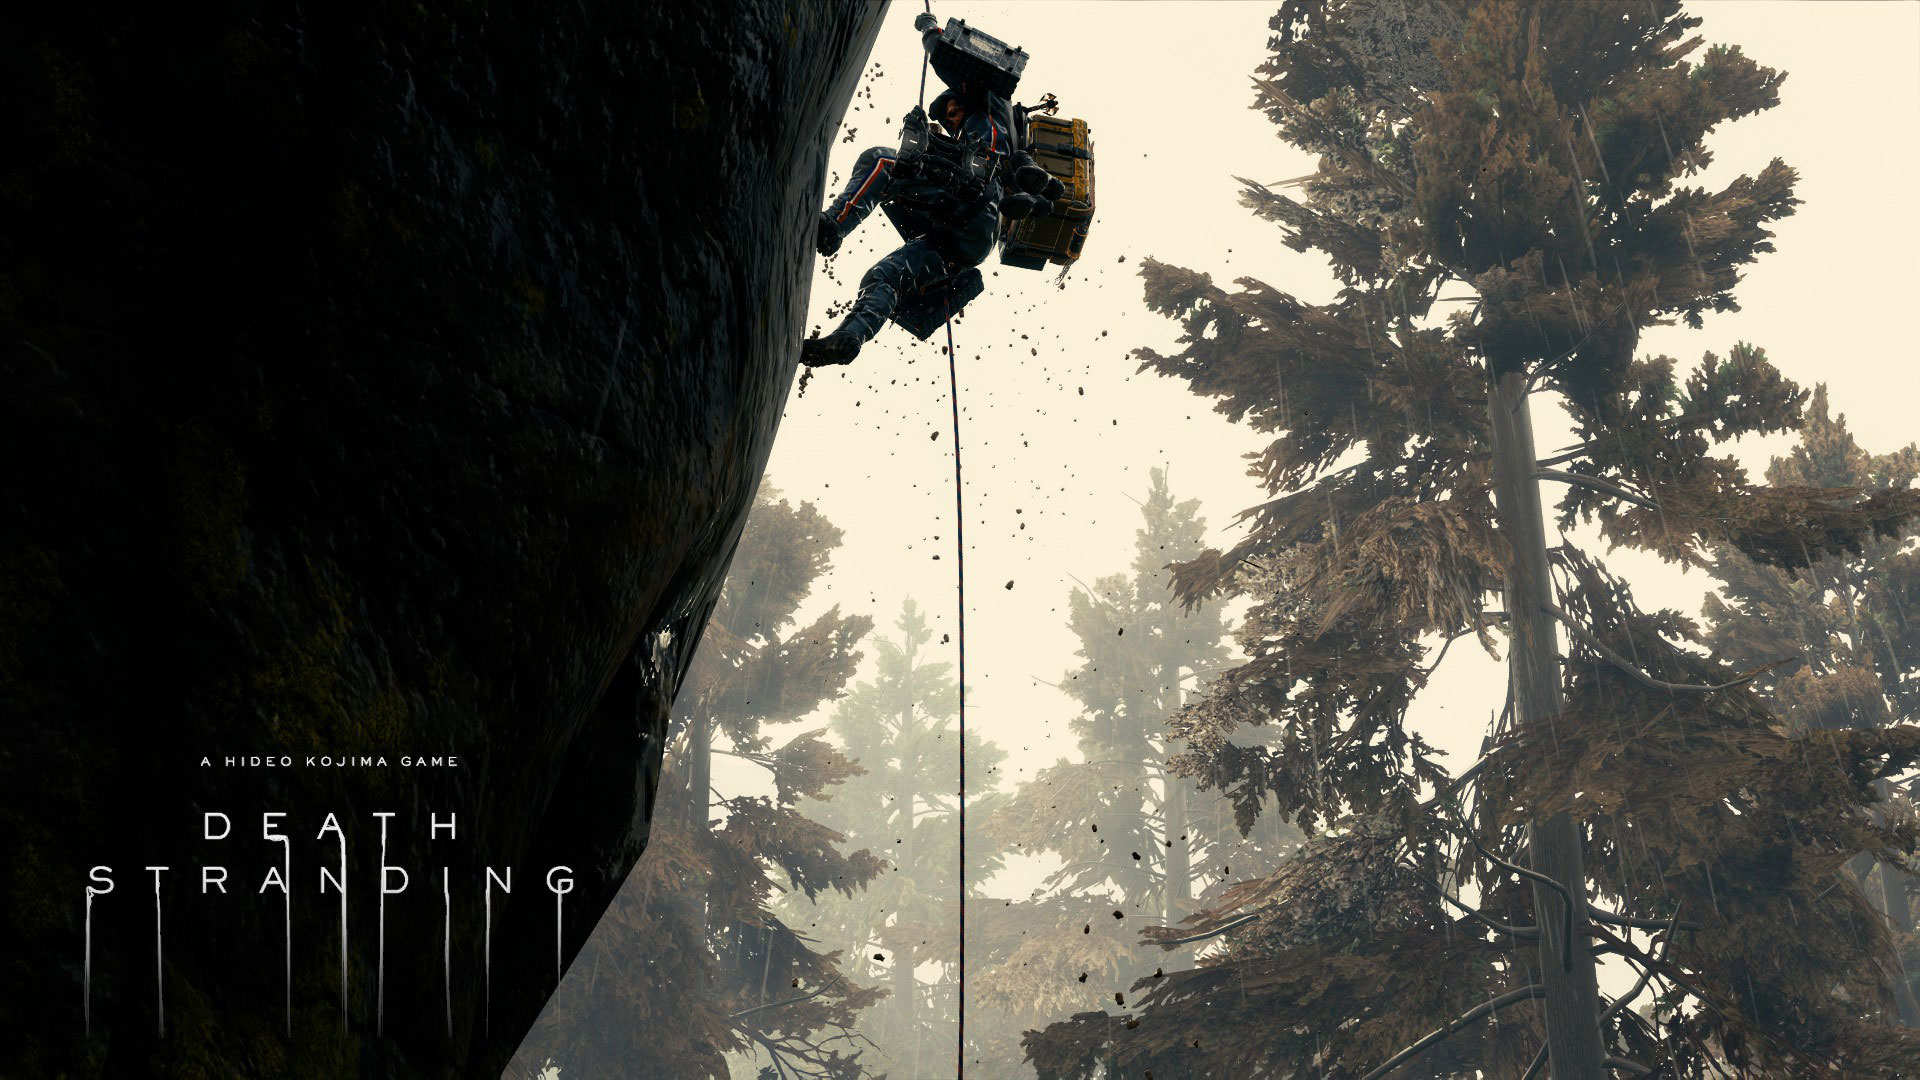 پایین آمدن نورمن ریداس با طناب از صخره در محیط جنگلی خاص بازی دث استرندینگ هیدئو کوجیما